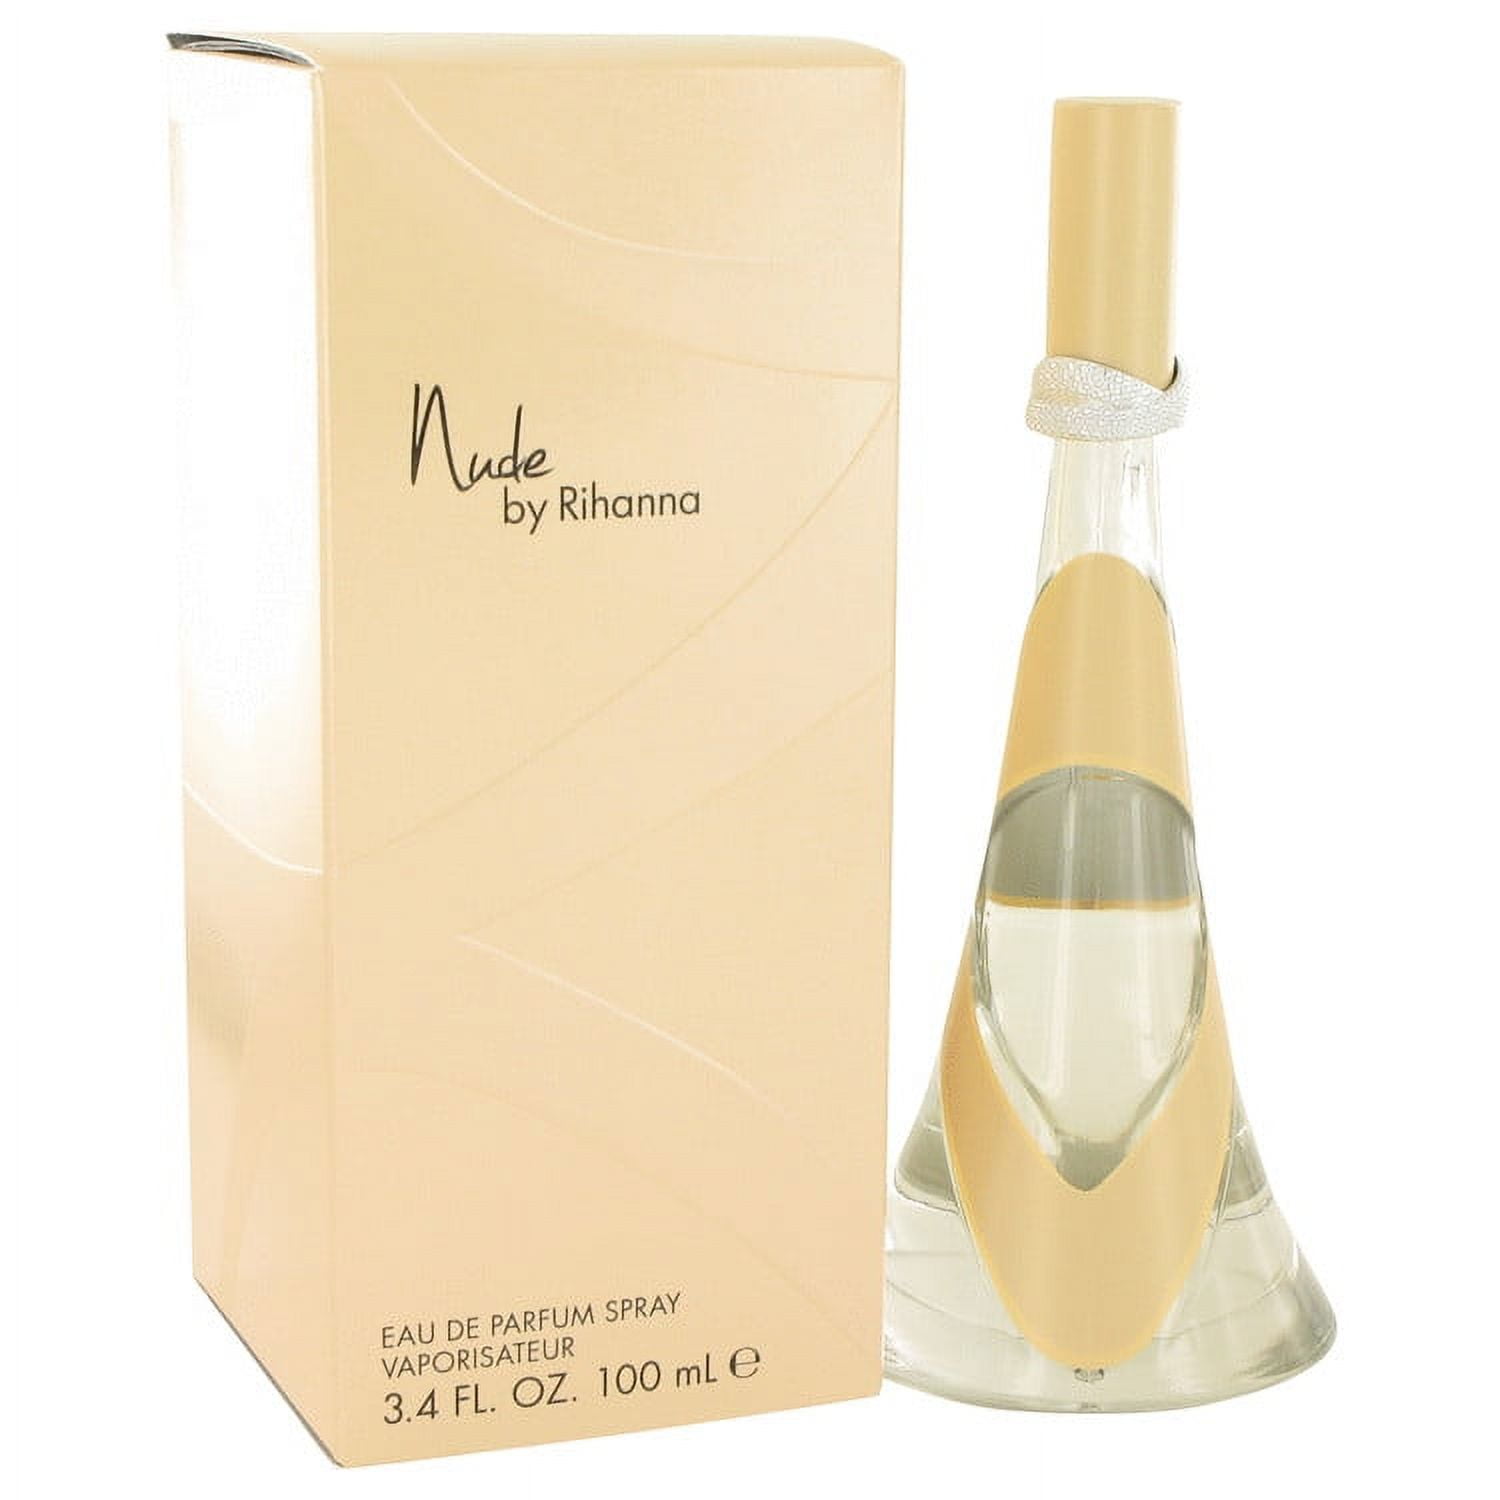 Ch-anel_ No. 5 Eau de Parfum Spray, Perfume for Women, 3.4 oz / 100 ml